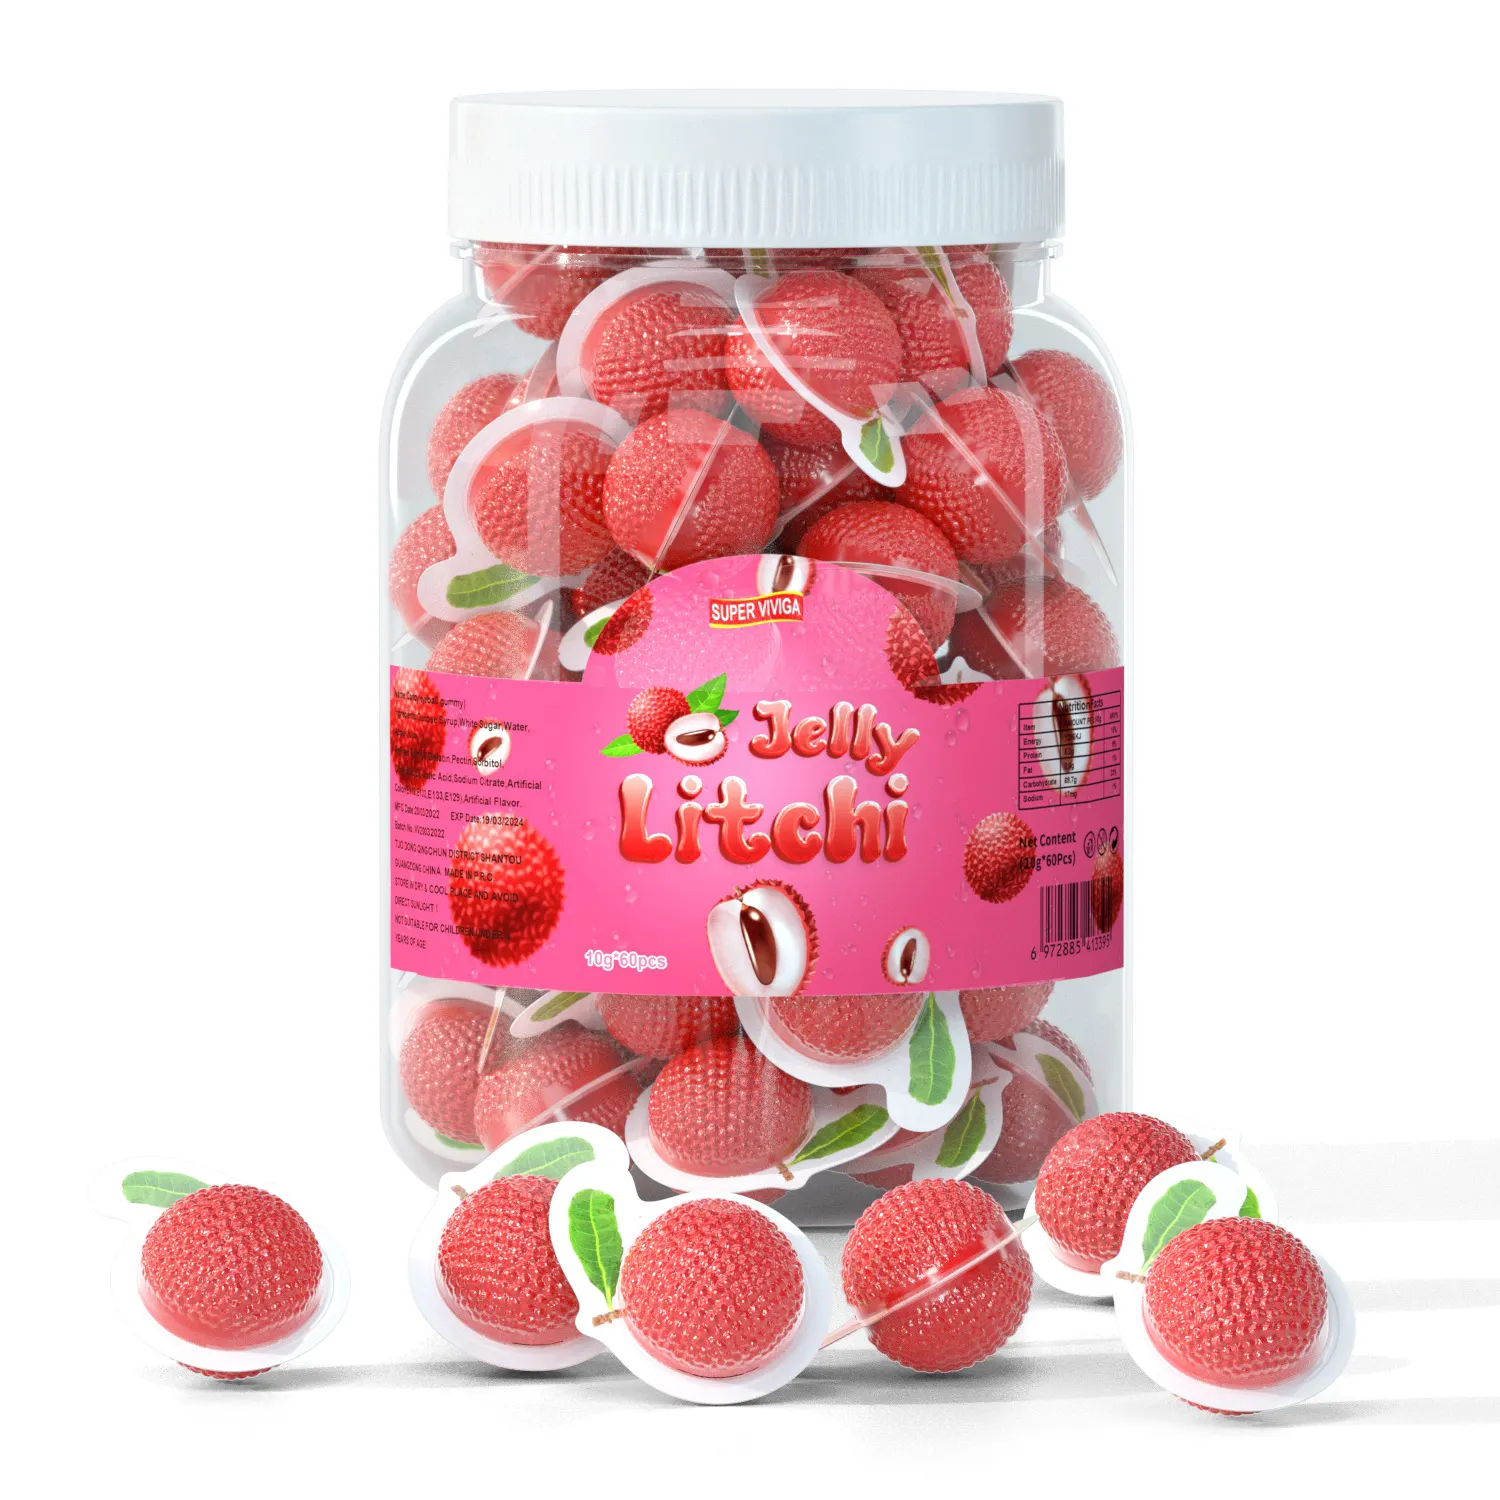 חדש עיצוב ליצ 'י כדור צורת פירות ריבה מילוי ריבת gummy ממתקים